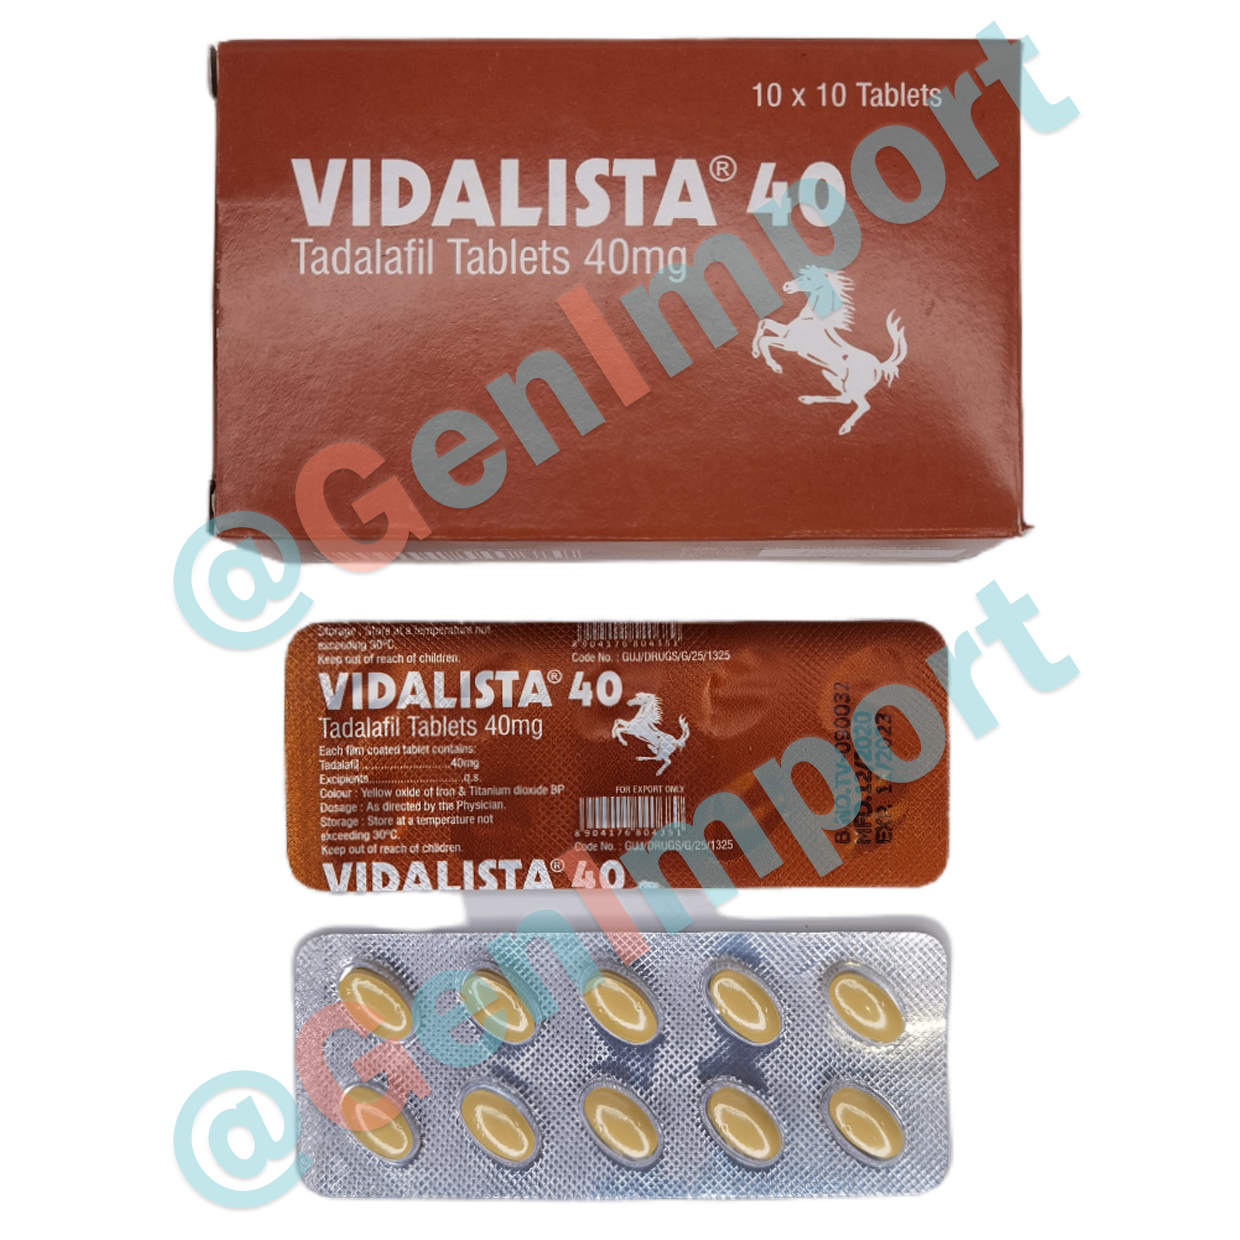 Vidalista Видалиста 40, аналог сиалиса (тадалафил, tadalafil)